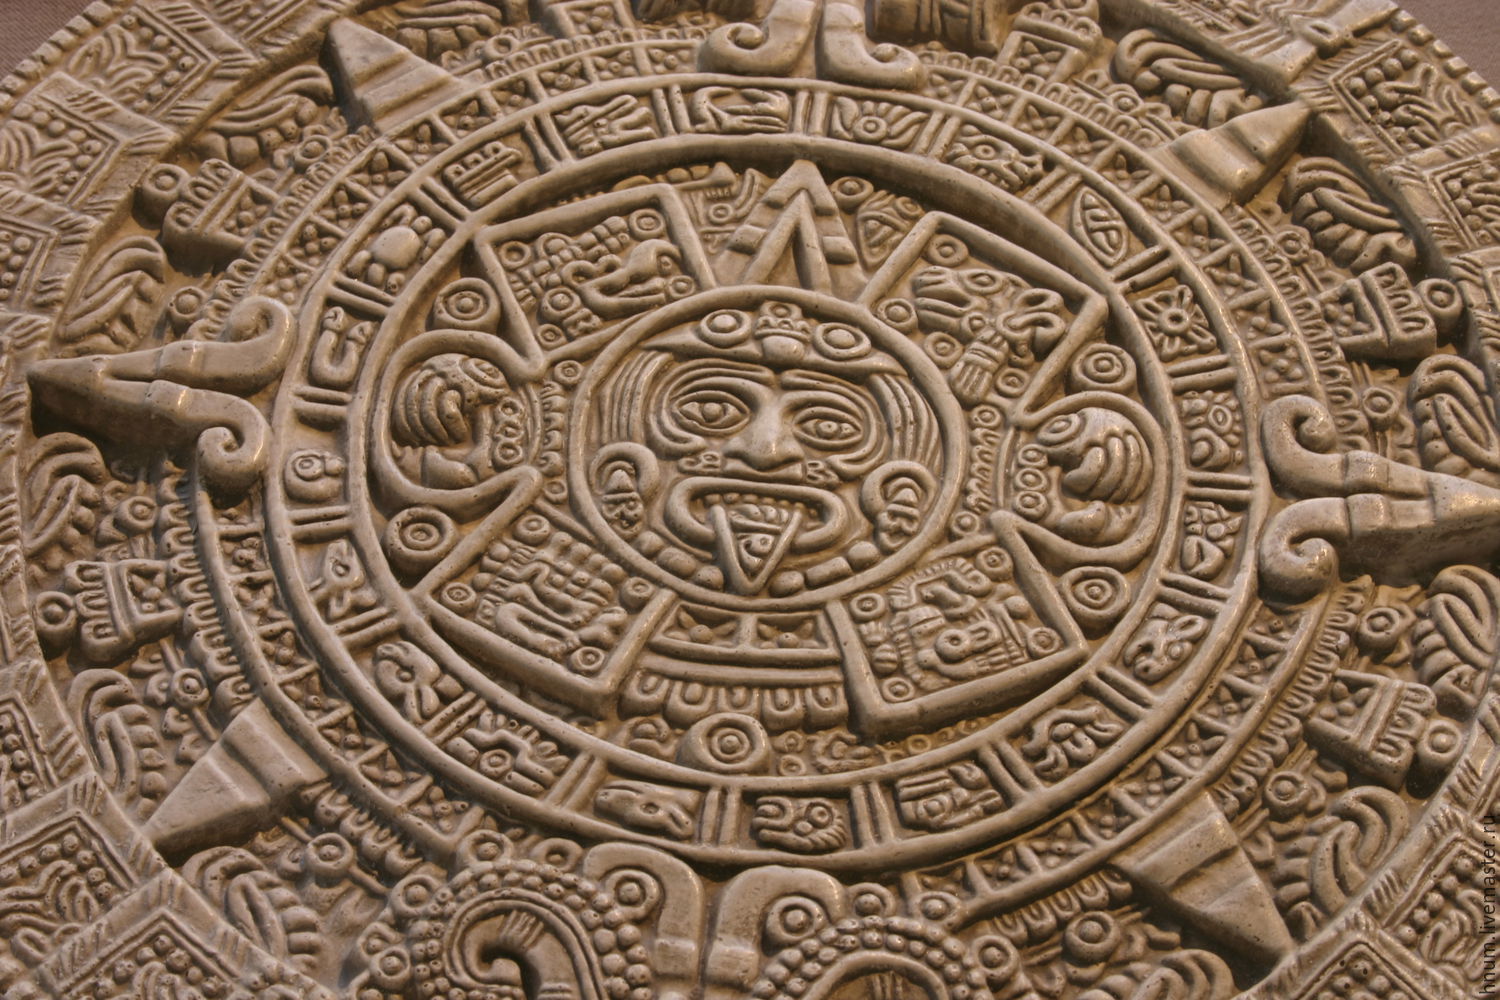 Иллюстрация календарь майя. Камень солнца ацтеков. Символ солнца Майя Ацтеки инки. Солнечный камень древних ацтеков. Ацтекский календарь камень солнца.